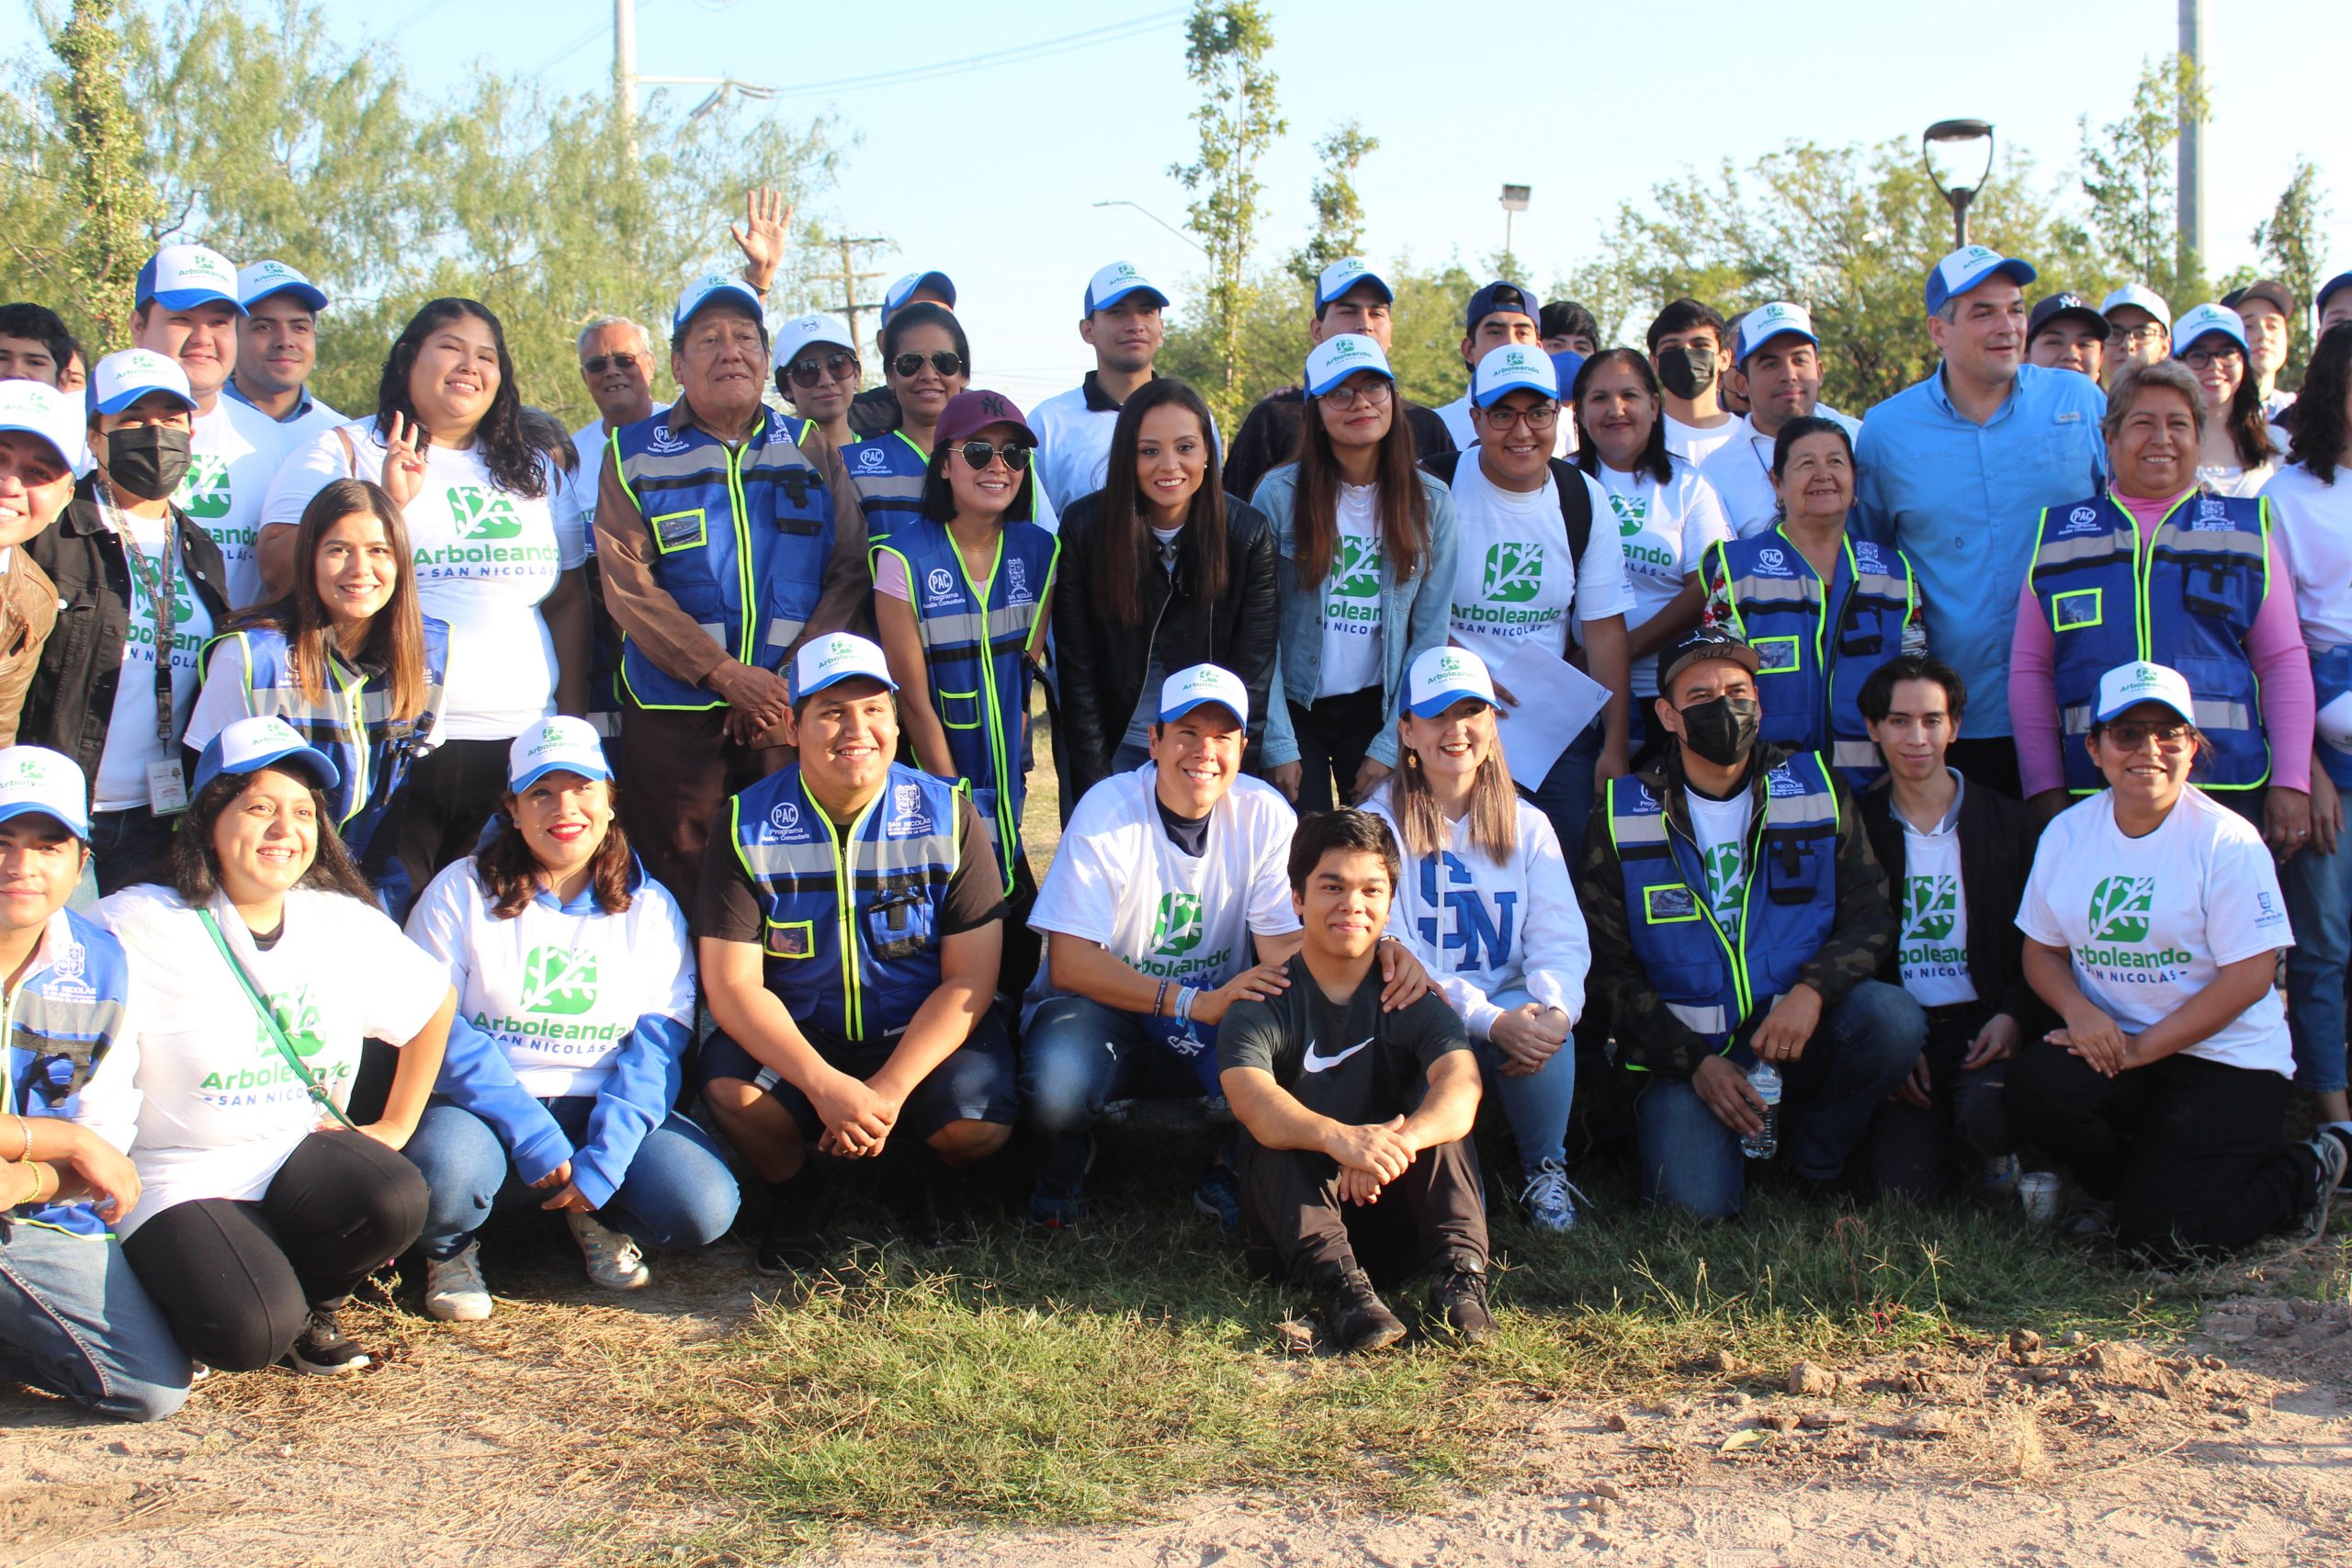 Daniel Carrillo reforesta los parques con programa “Arboleando San Nicolás”